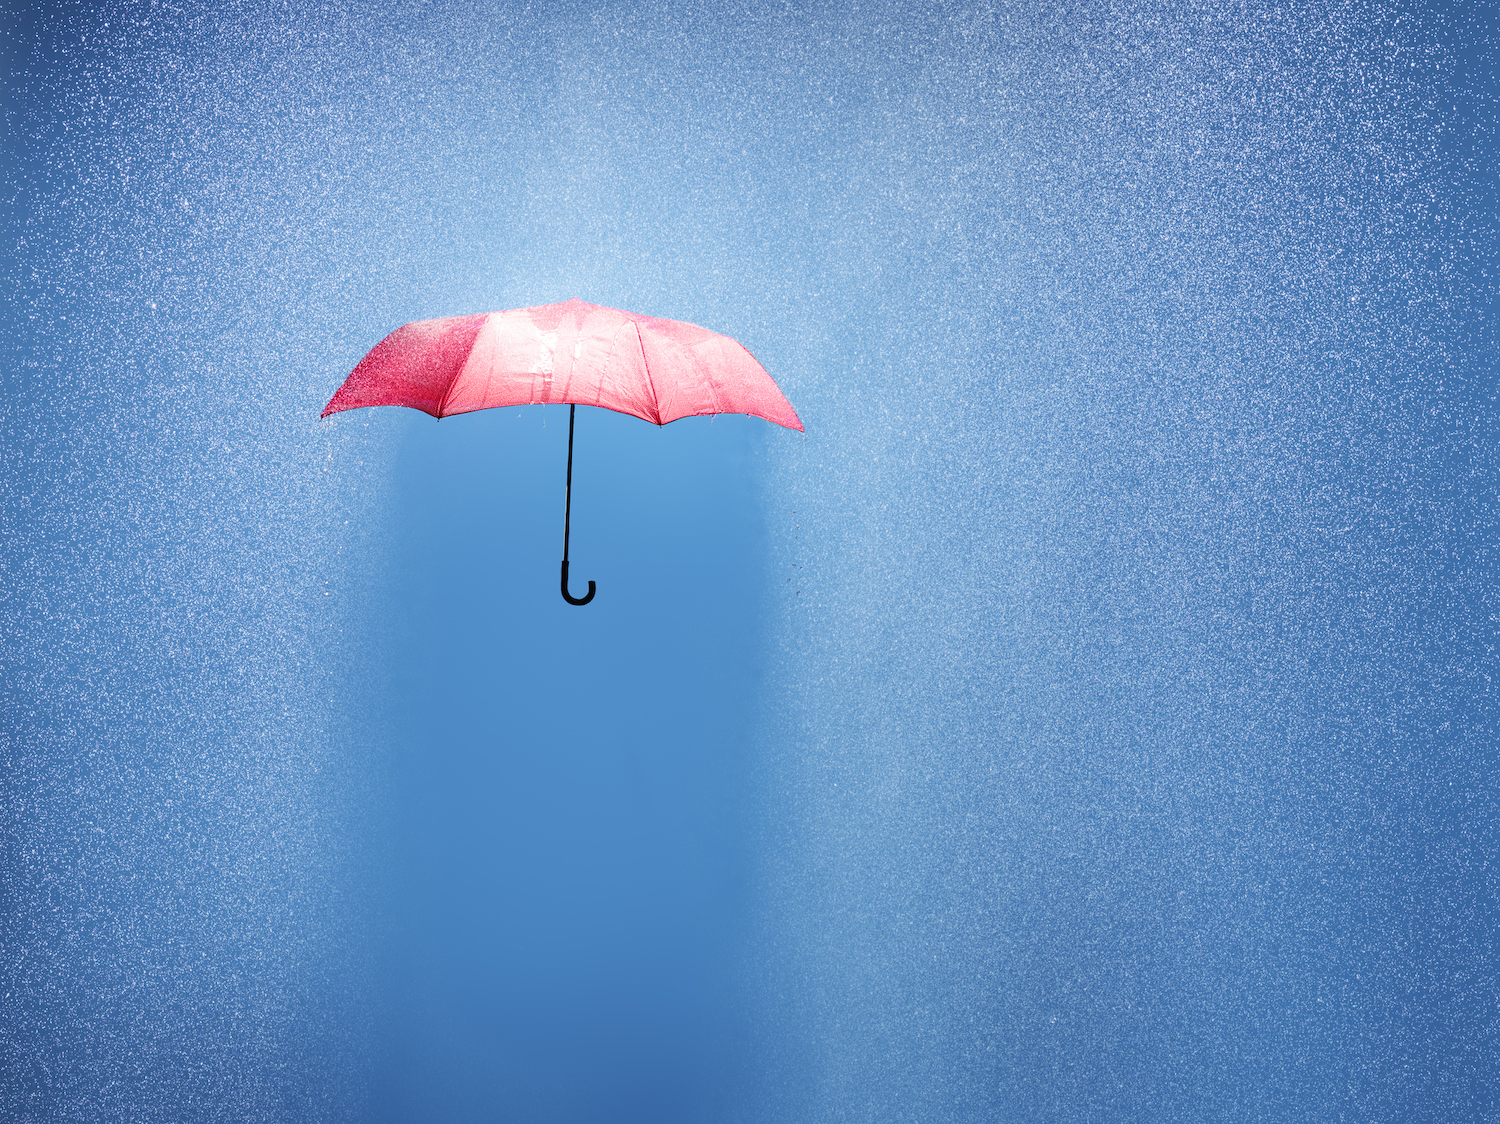 pink umbrella in rain shower, conceptual photo